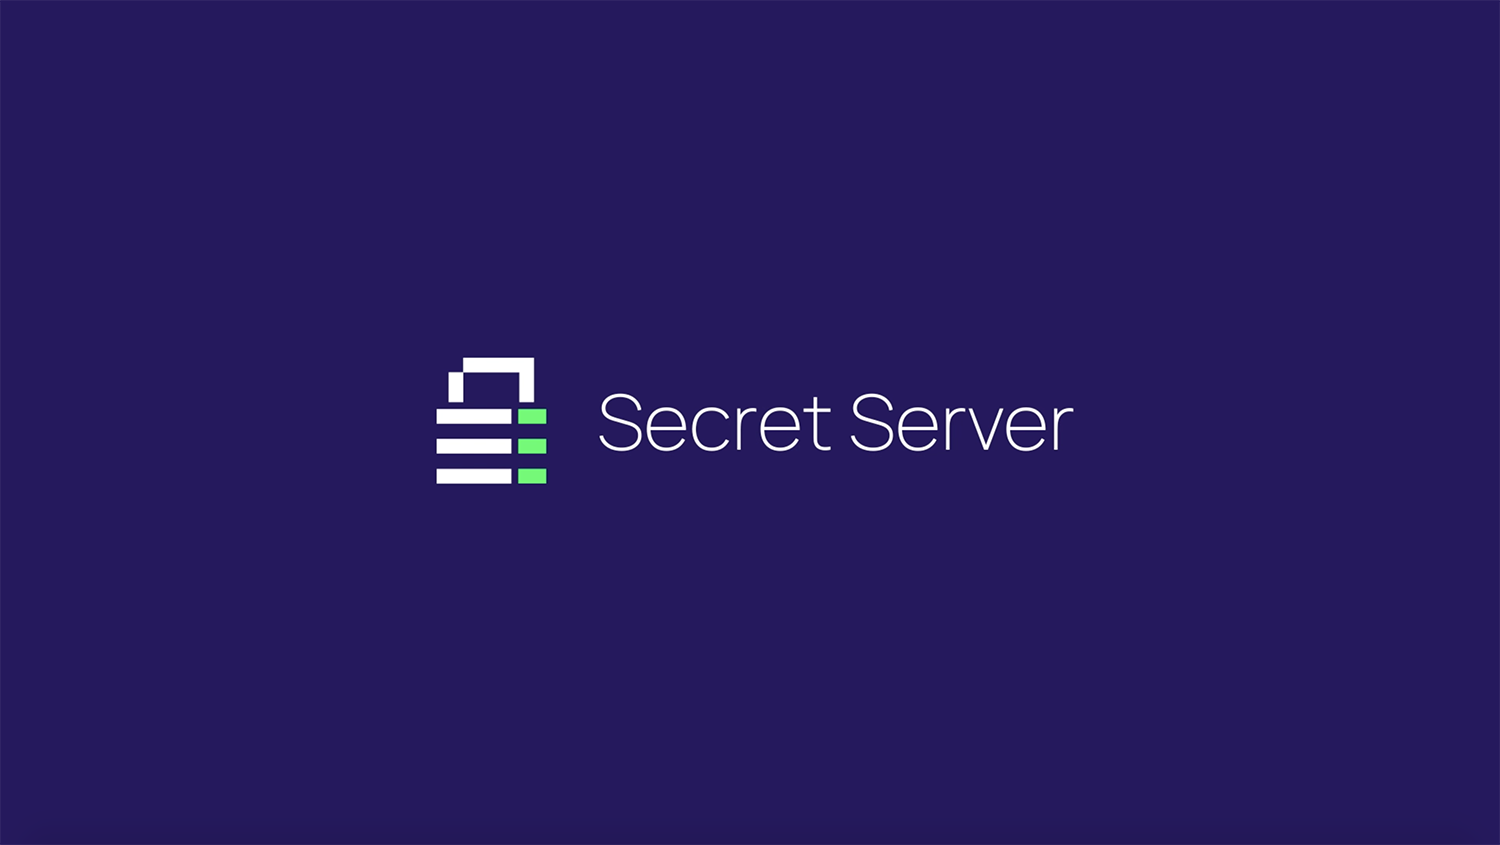 Secret Server Demo